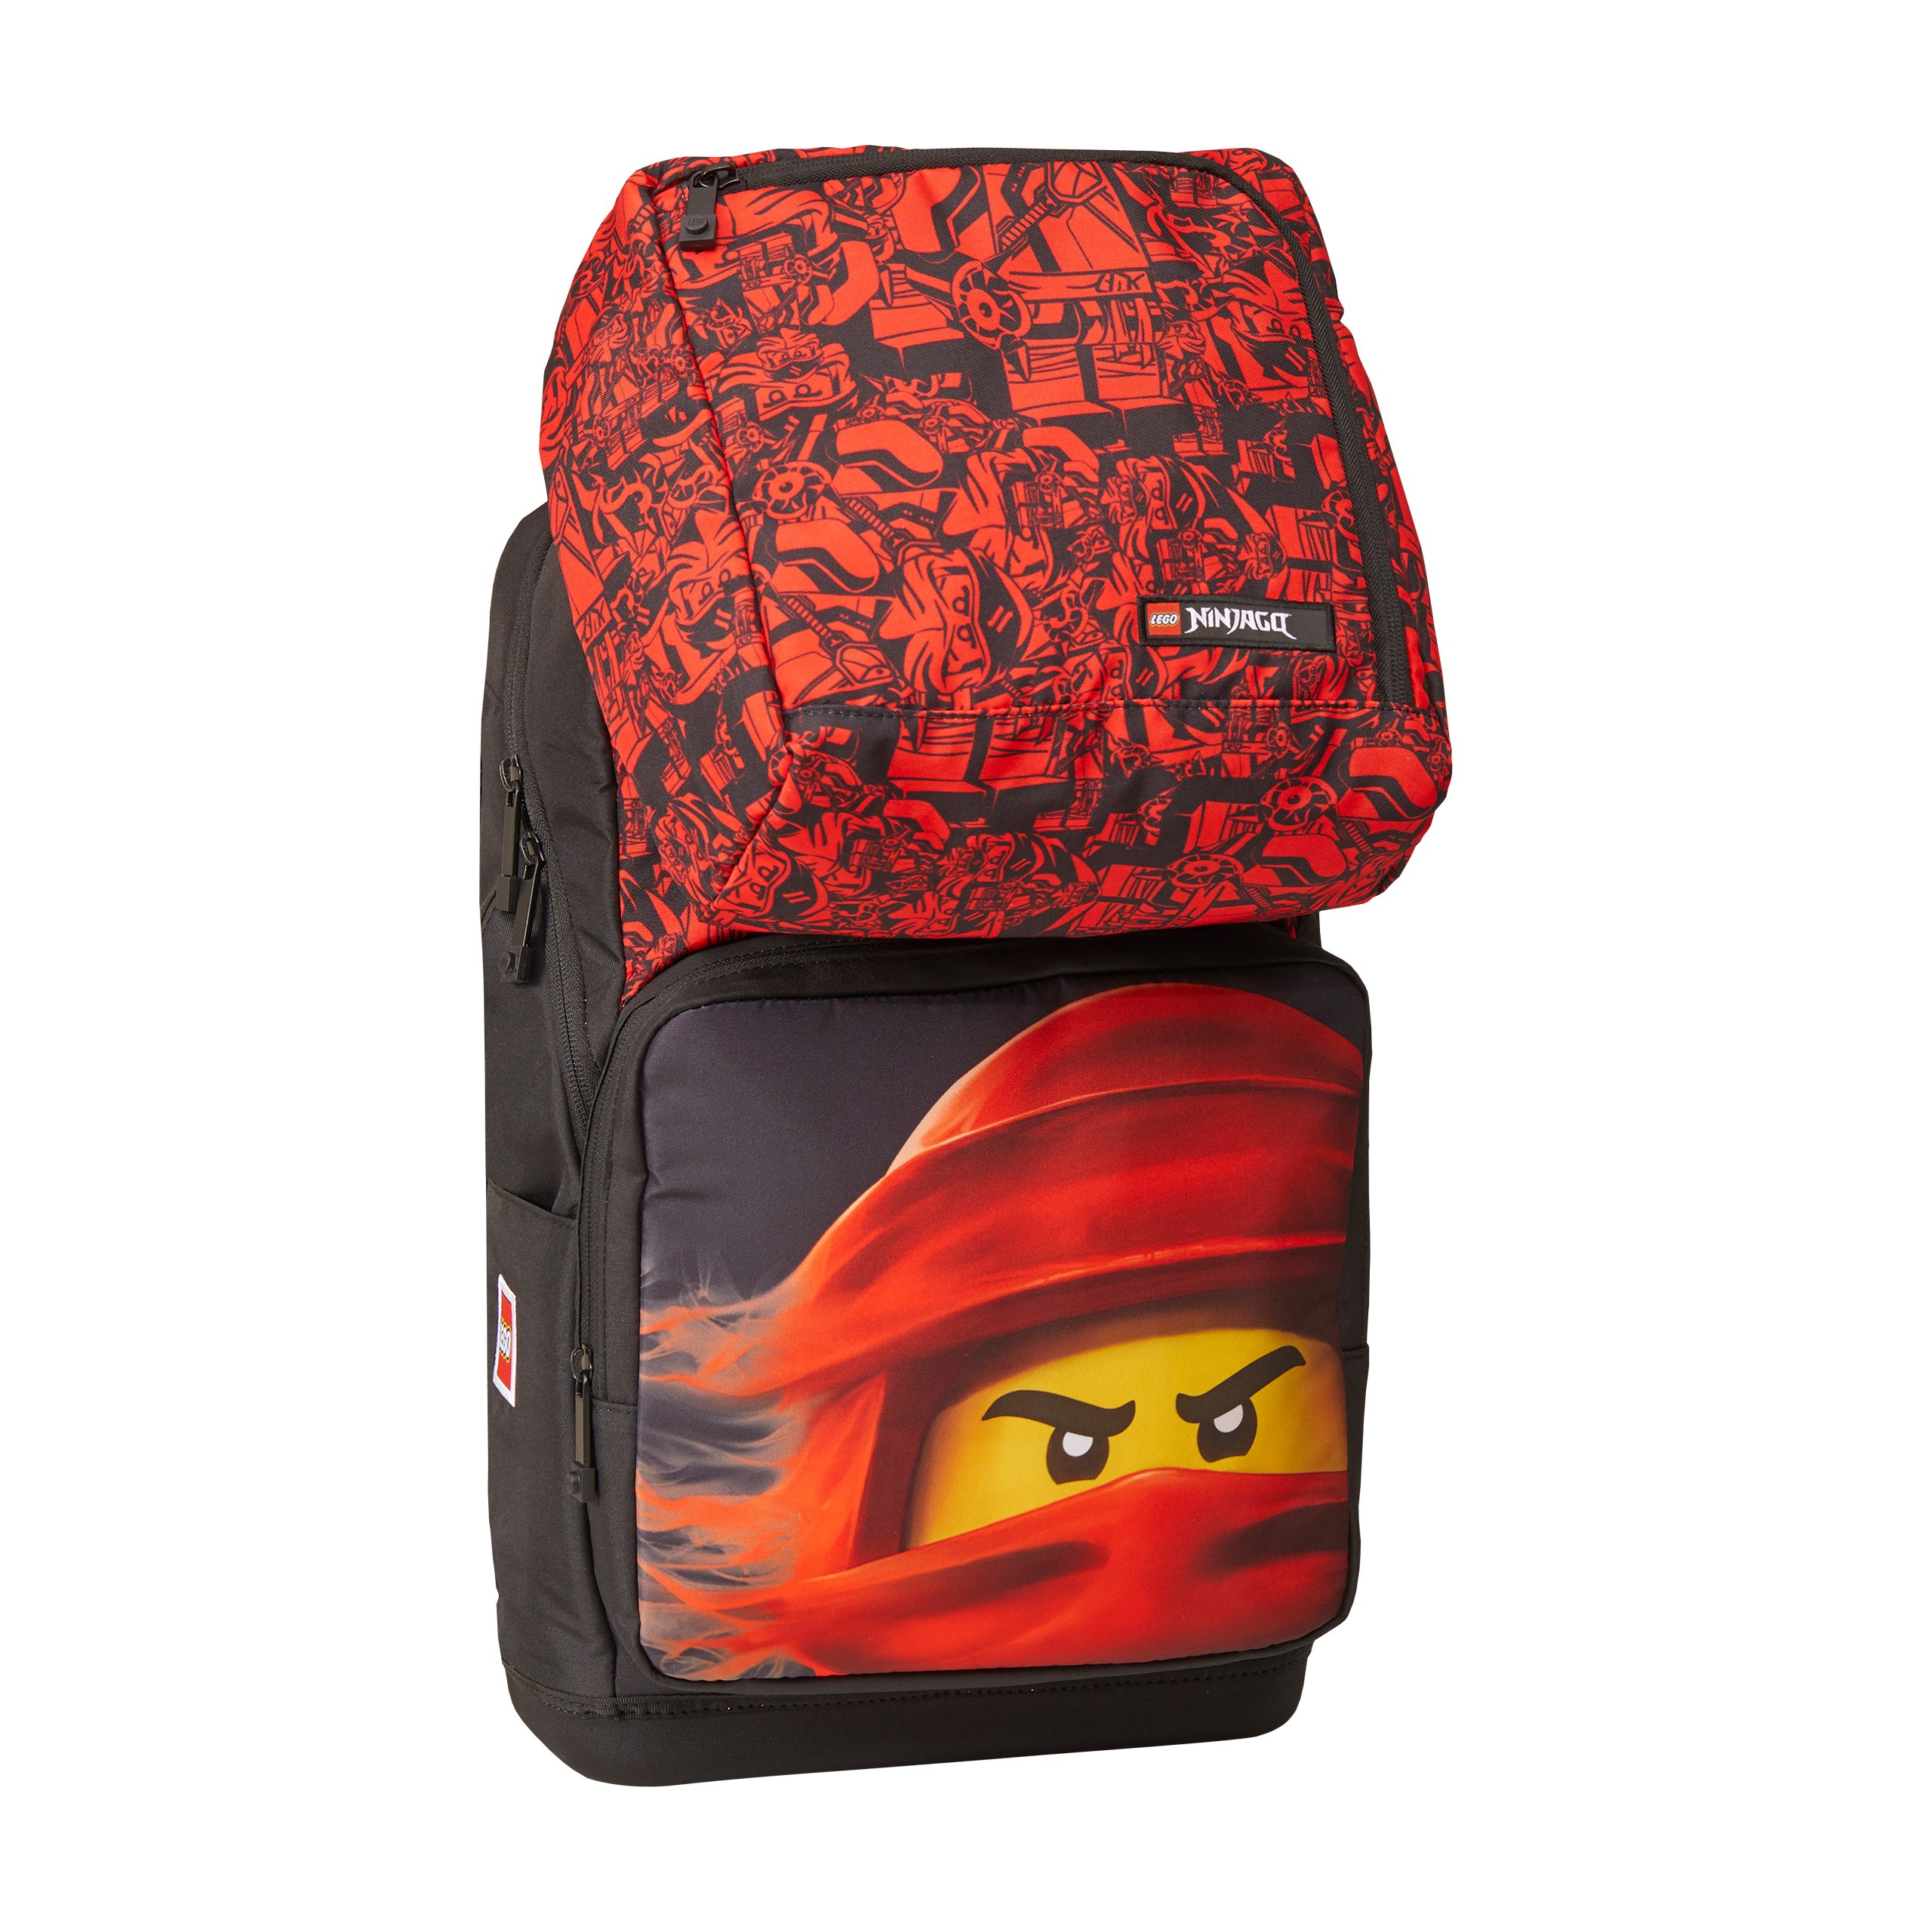 LEGO - Optimo Plus School Bag - Ninjago Red (20213-2202)